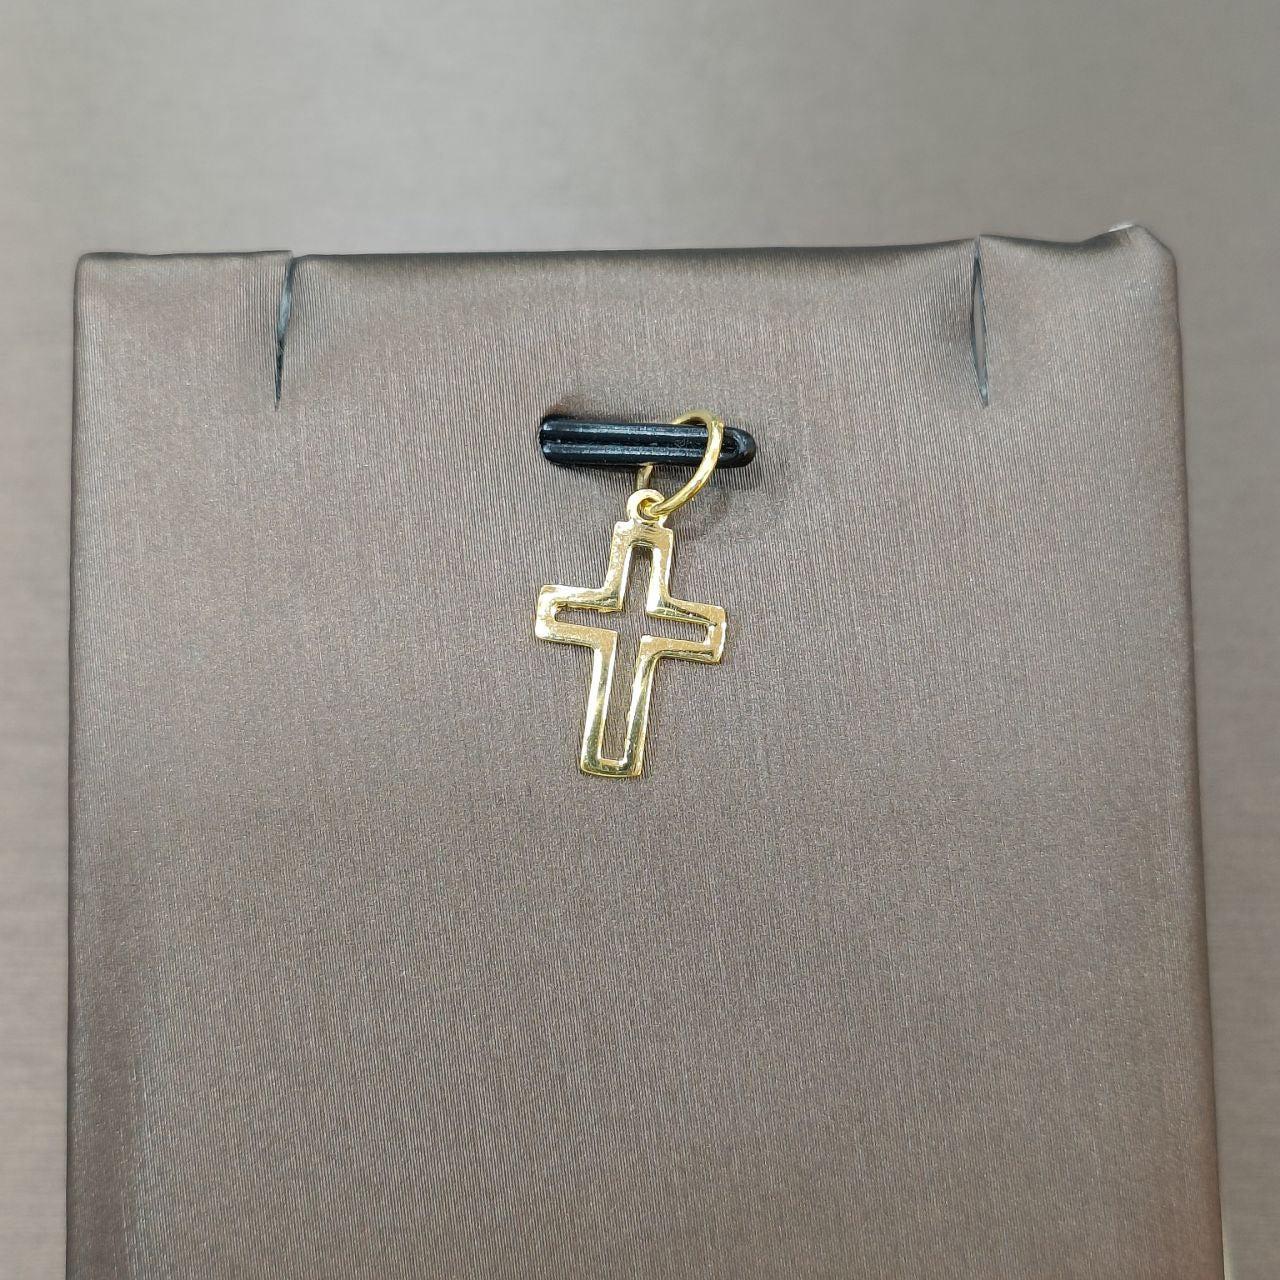 22k / 916 Gold Cross Pendant-Charms & Pendants-Best Gold Shop